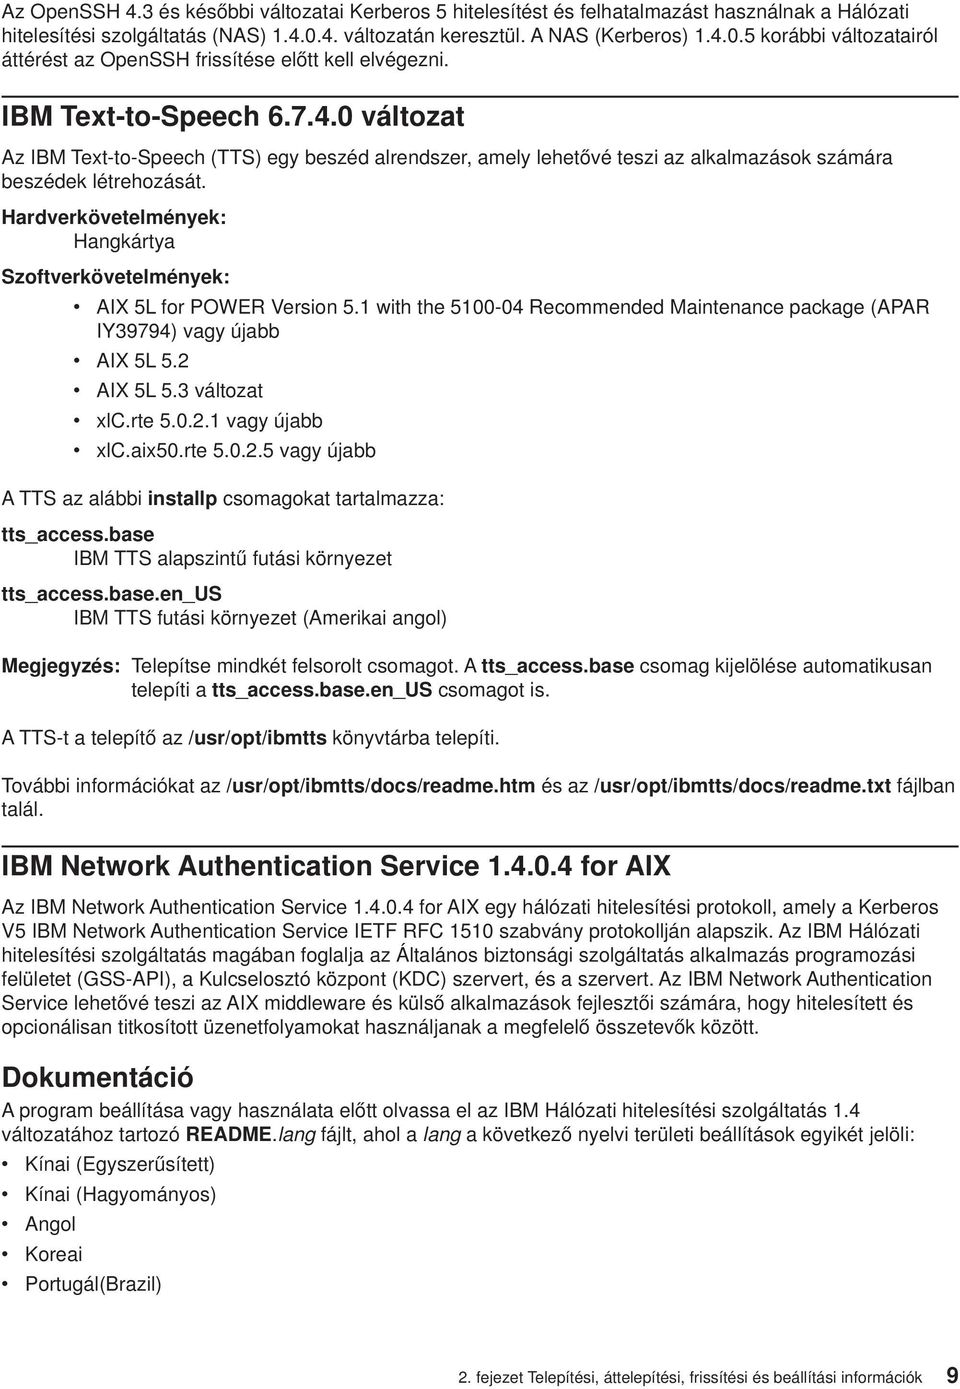 Hardverkövetelmények: Hangkártya Szoftverkövetelmények: v AIX 5L for POWER Version 5.1 with the 5100-04 Recommended Maintenance package (APAR IY39794) vagy újabb v AIX 5L 5.2 v AIX 5L 5.